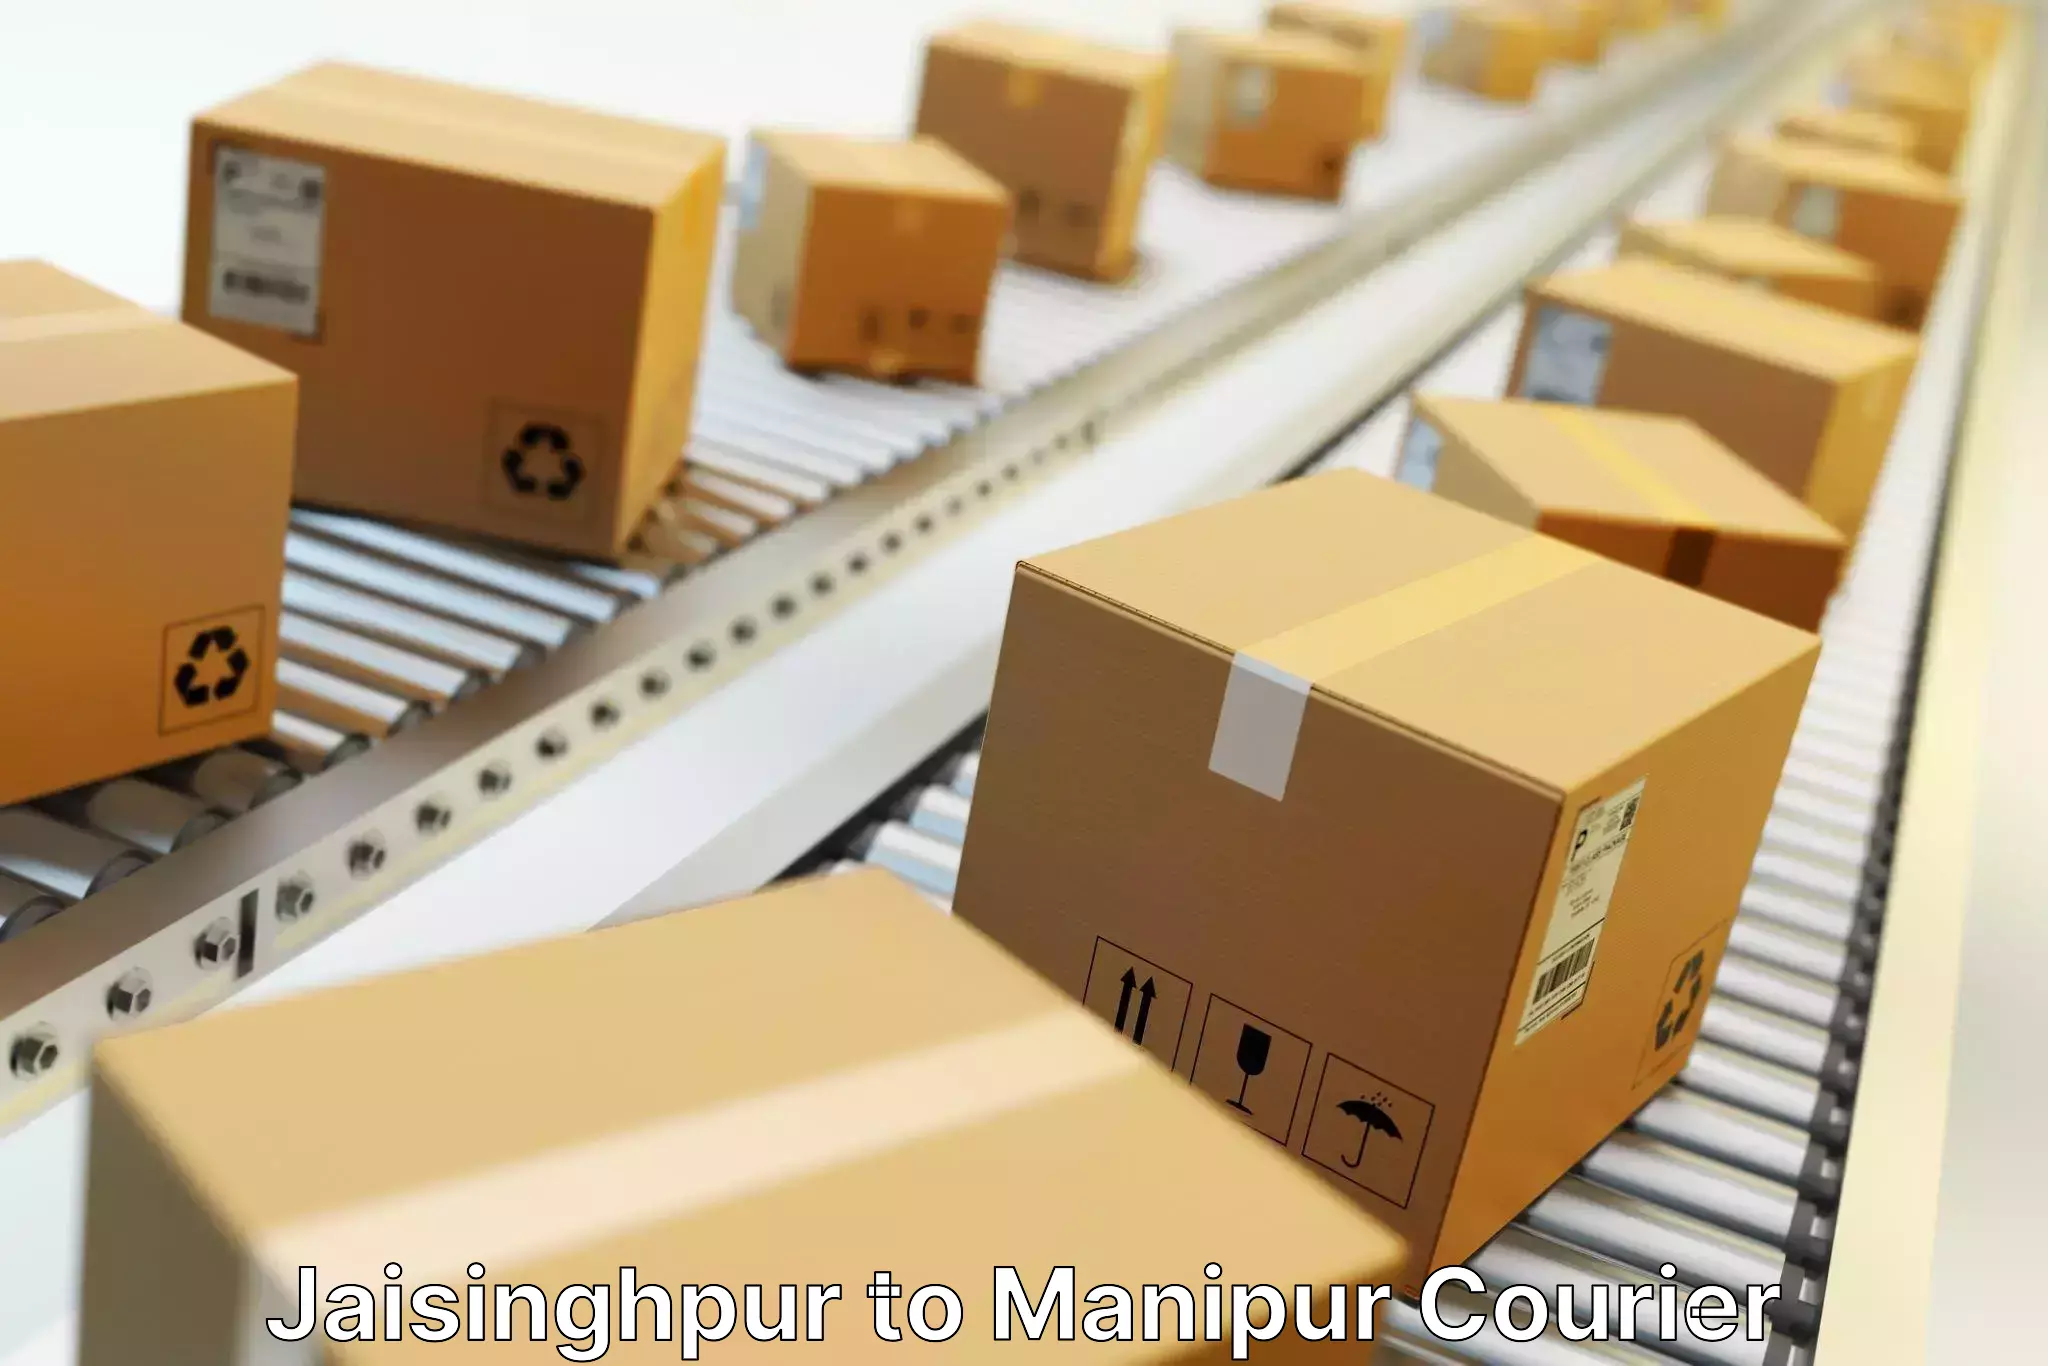 Premium courier solutions in Jaisinghpur to Tadubi